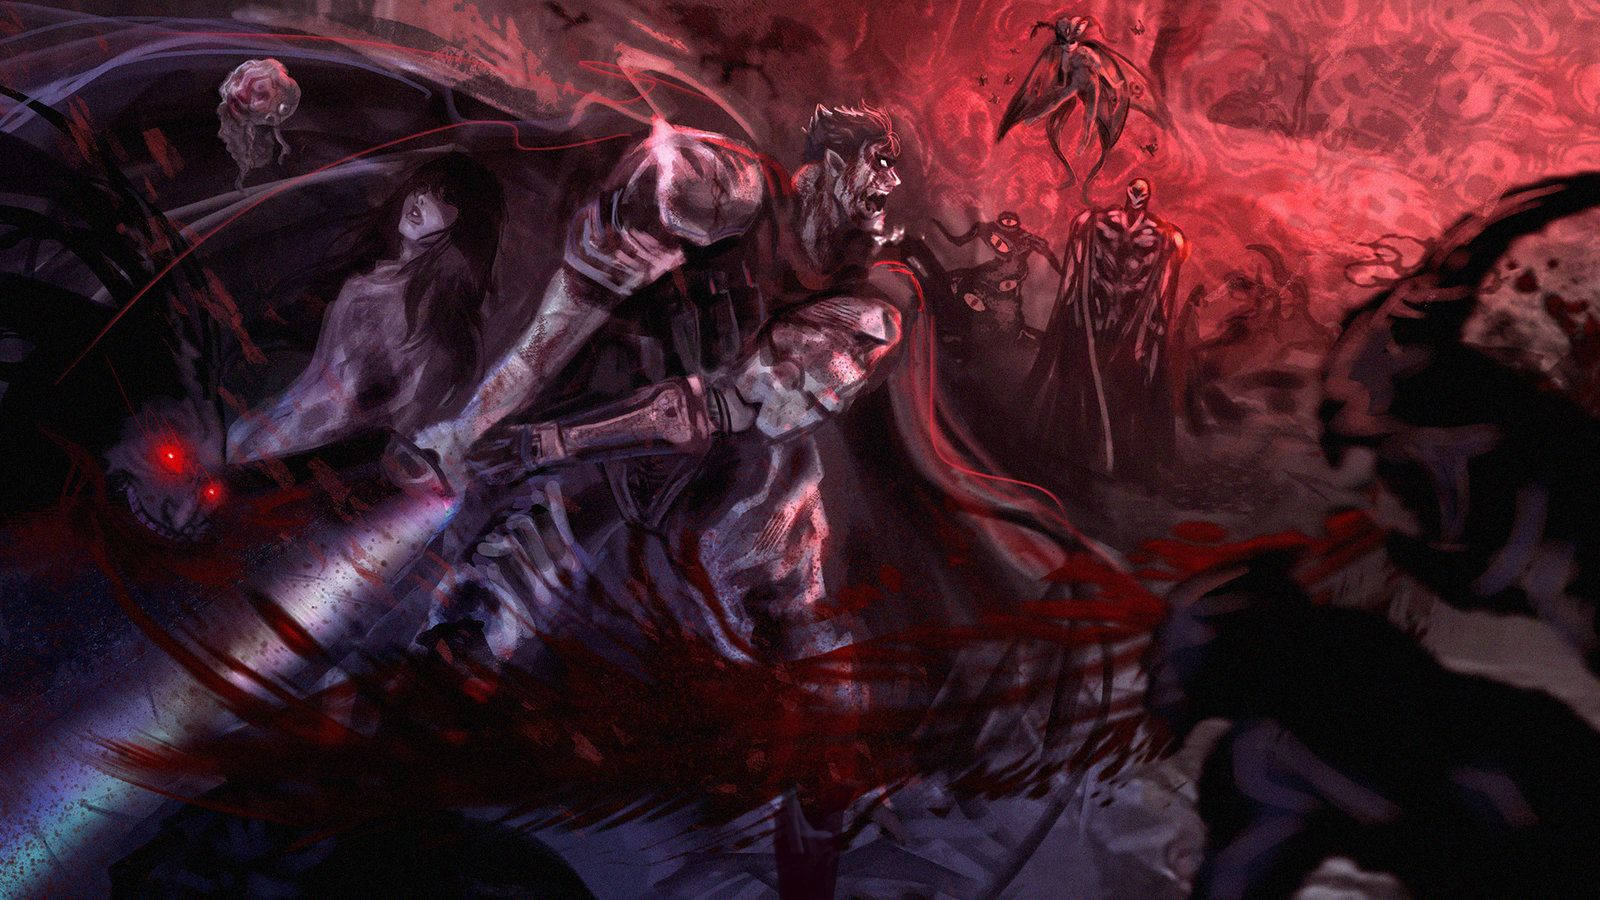 Unstoppable Rage: Guts, the legendary swordsman from Anime Berserk Wallpaper